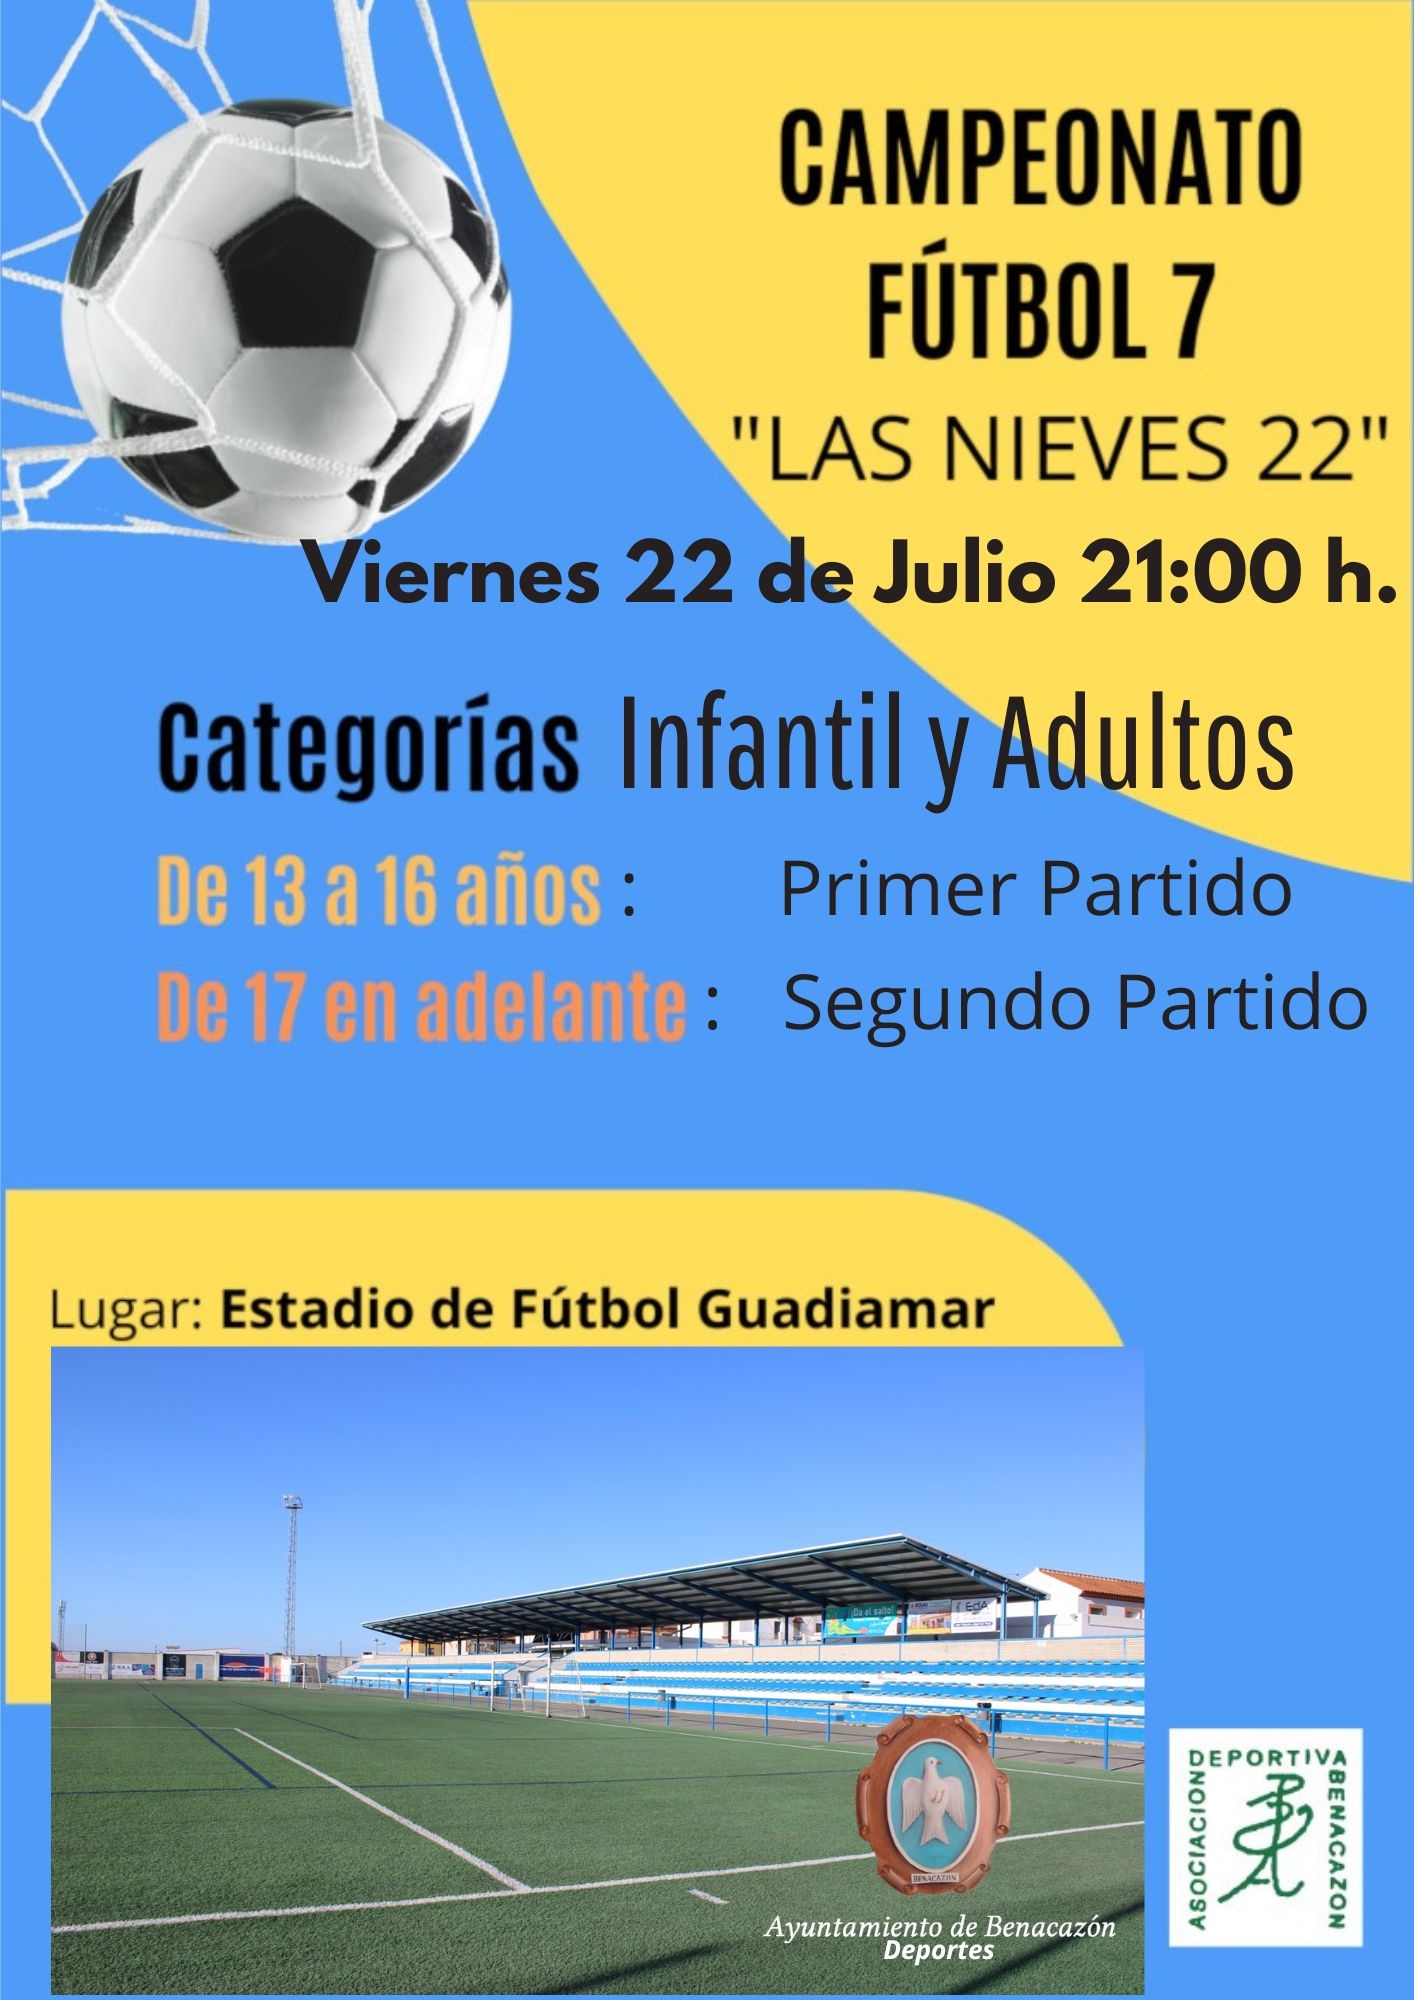 Capeonato Fútbol 7-22 Julio